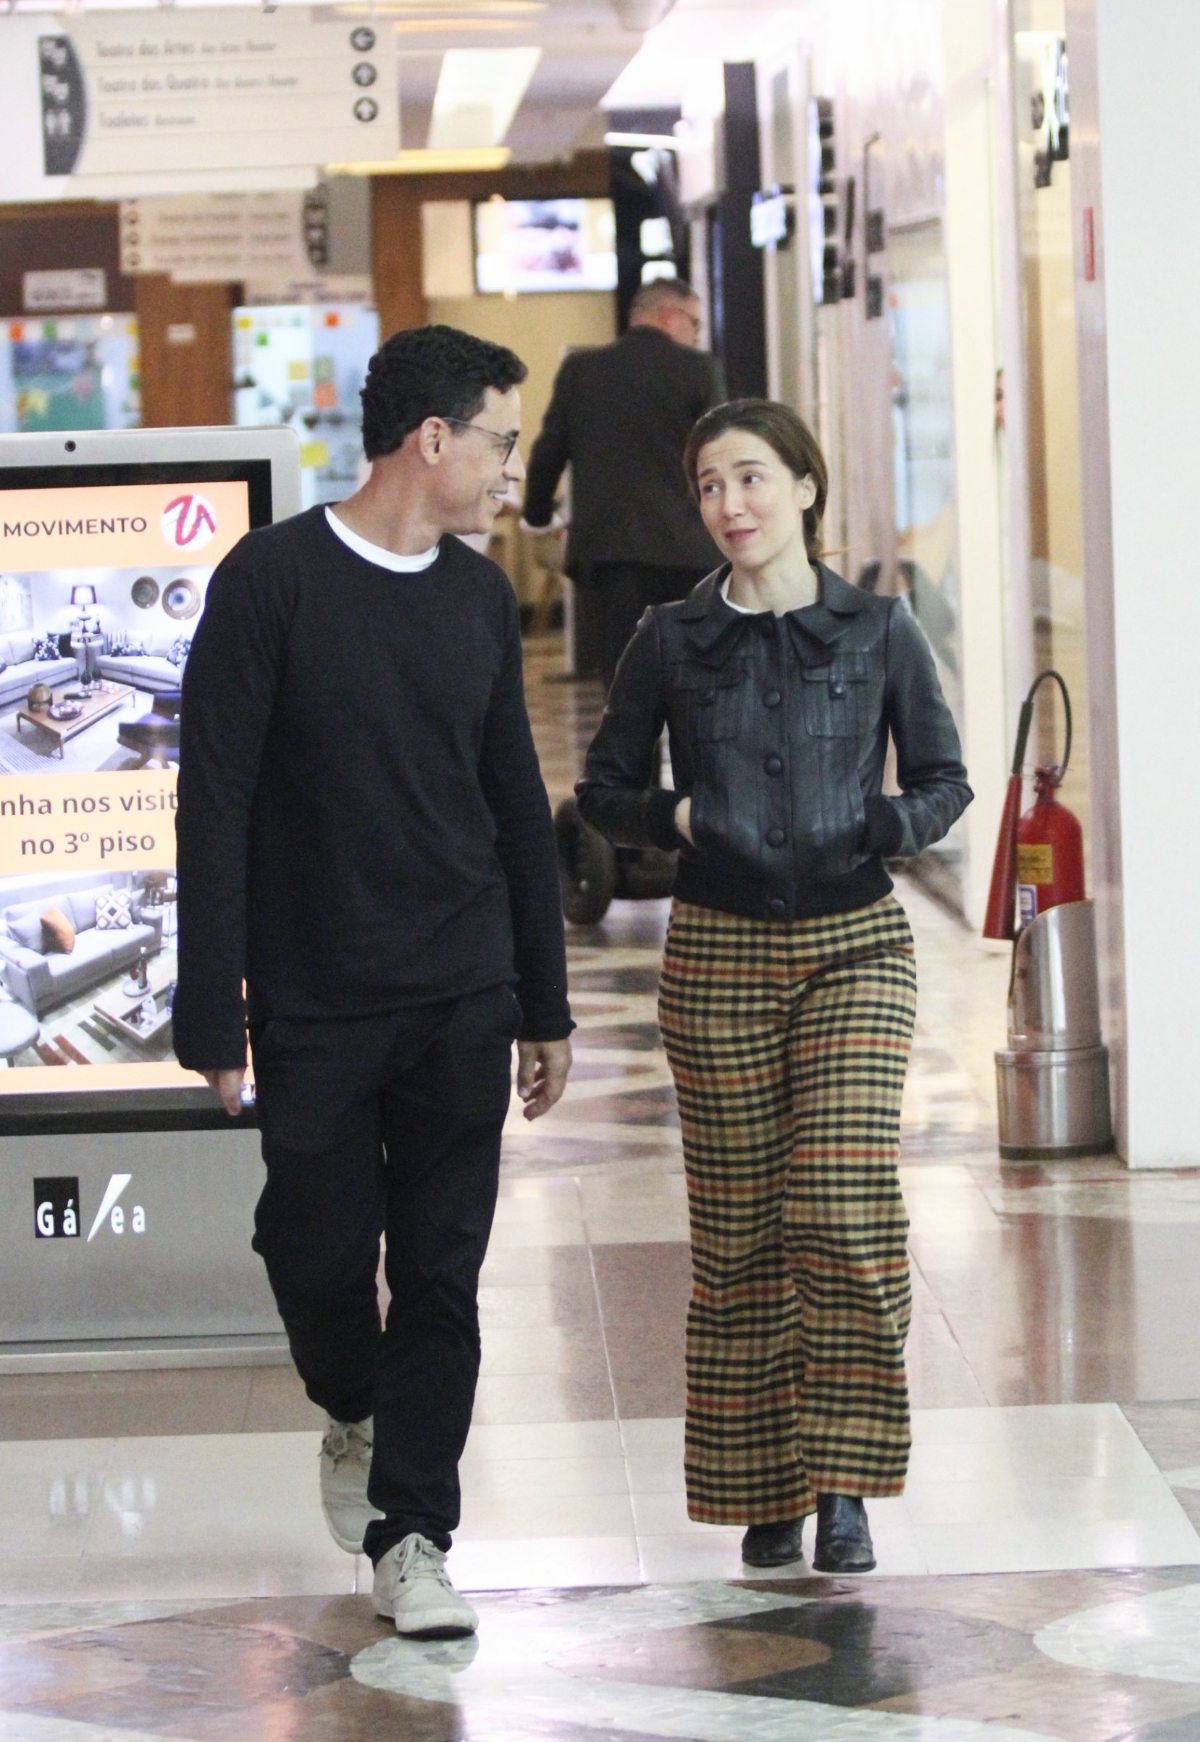 Marjorie Estiano curte passeio com o namorado em shopping no RJ